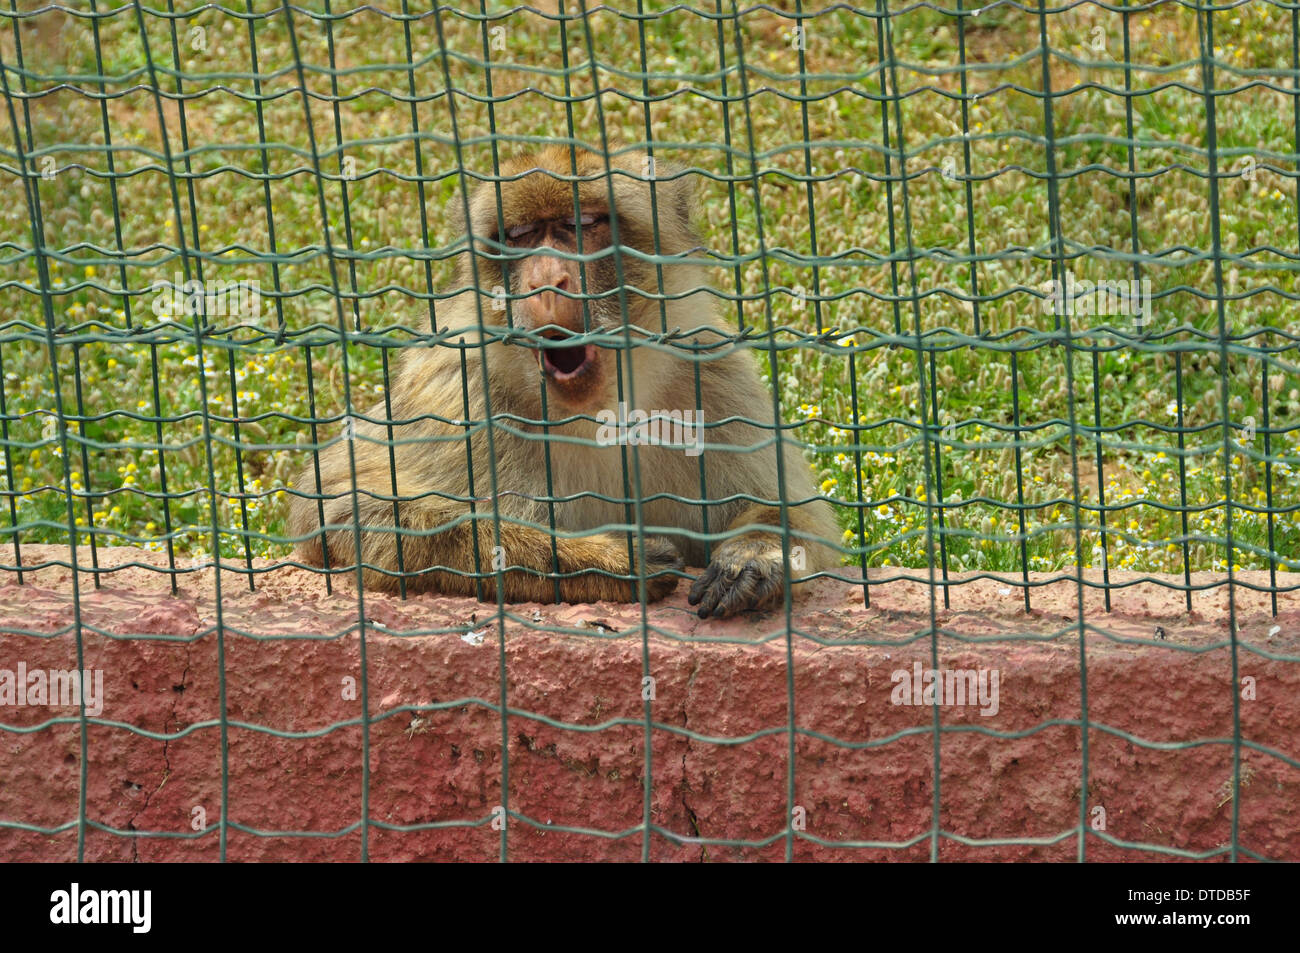 Singe Macaque en captivité. Des animaux sauvages au zoo. Banque D'Images